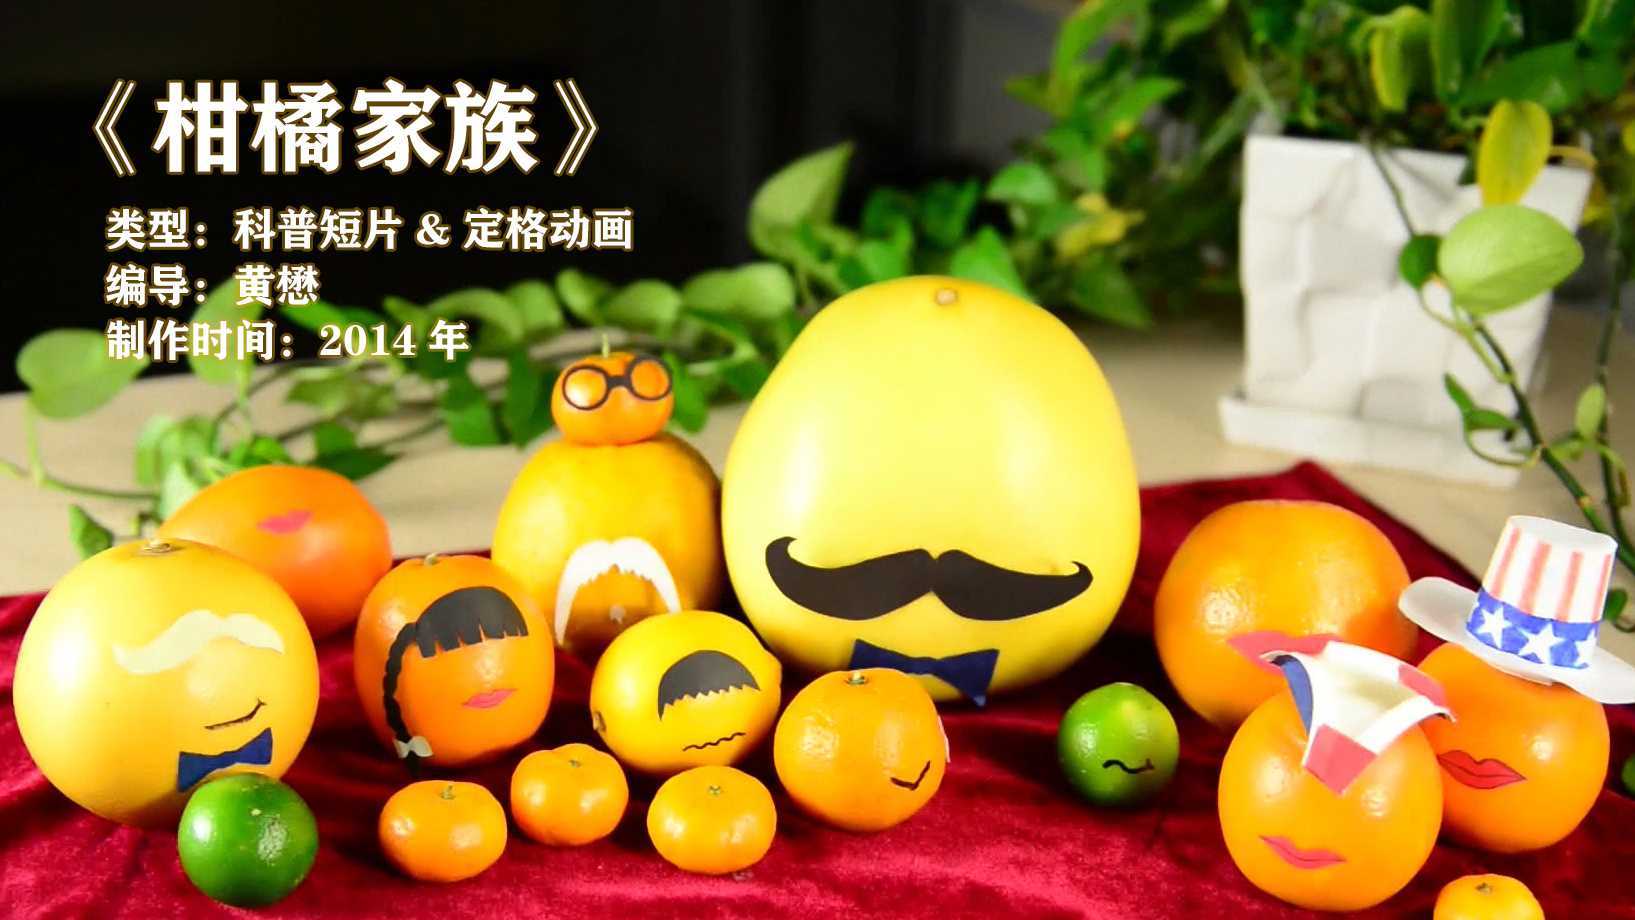 《柑橘家族》(2014) 萌萌哒科普-定格动画 中国传媒大学